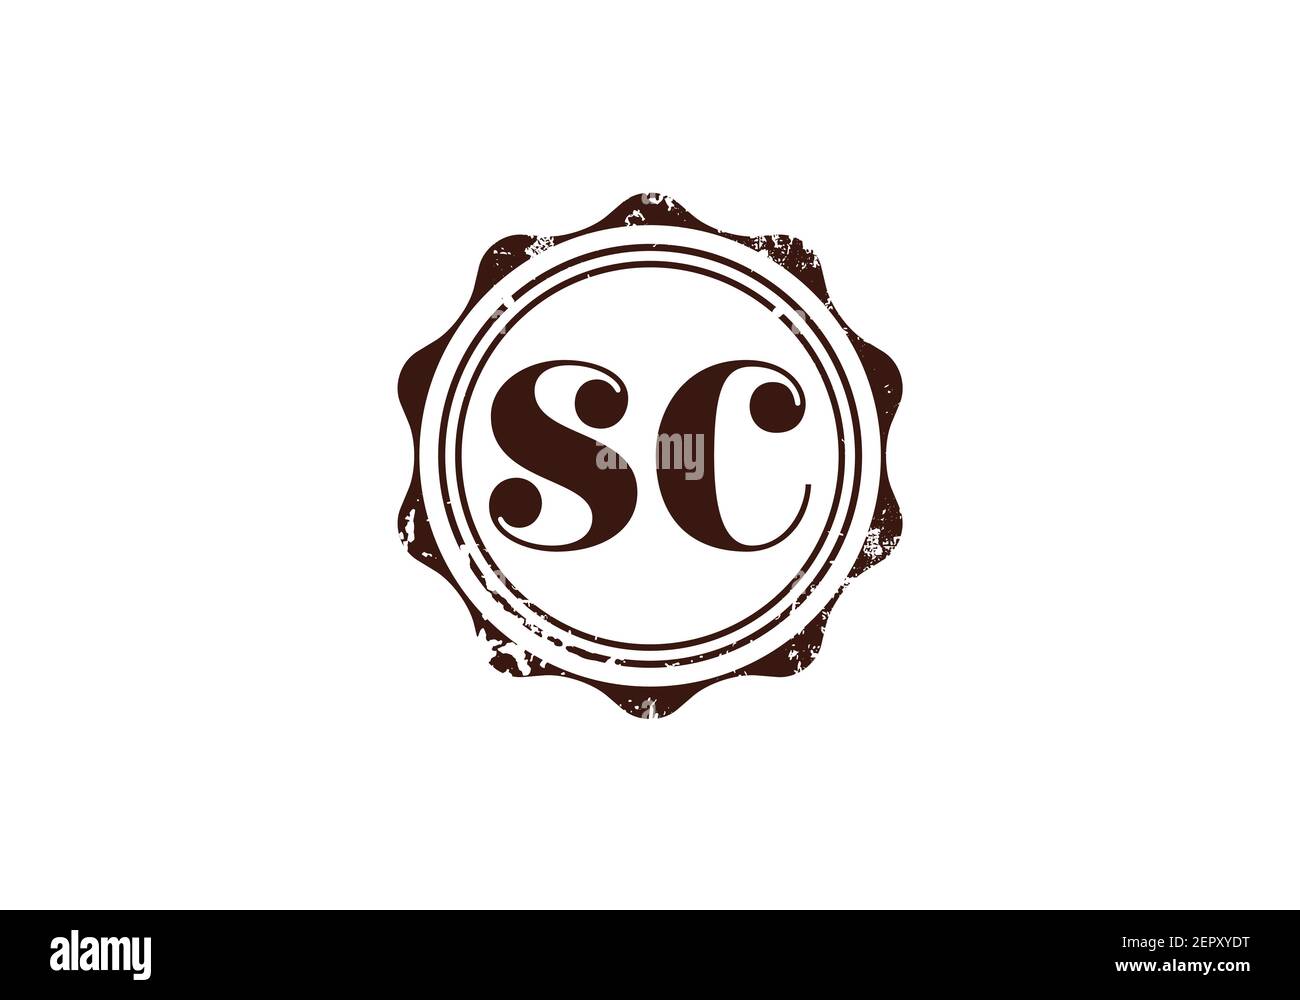 Initial Monogram Letter S C Logo Design Vektor-Vorlage. S C Letter Logo Design Stock Vektor